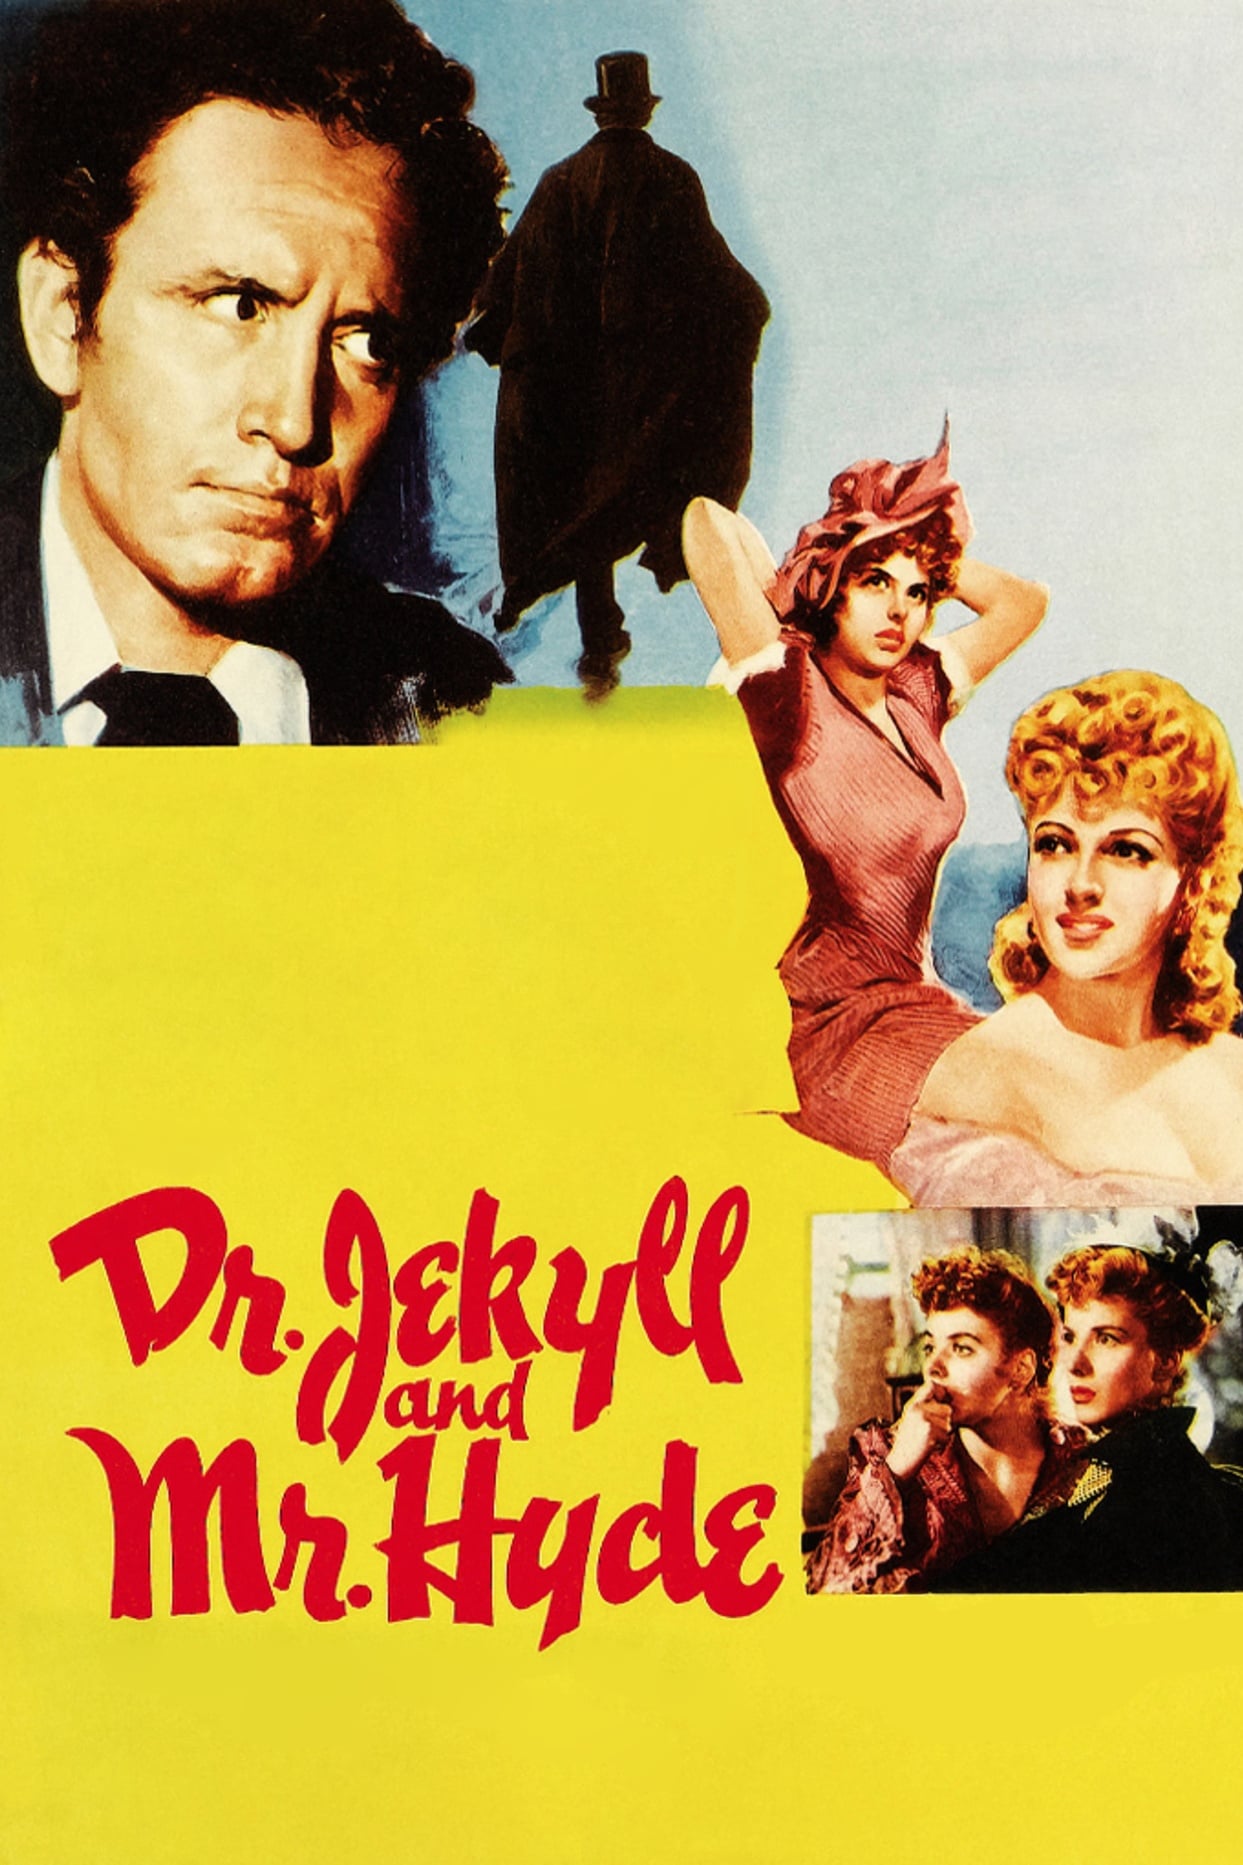 El extraño caso del Dr. Jekyll and Mr. Hyde